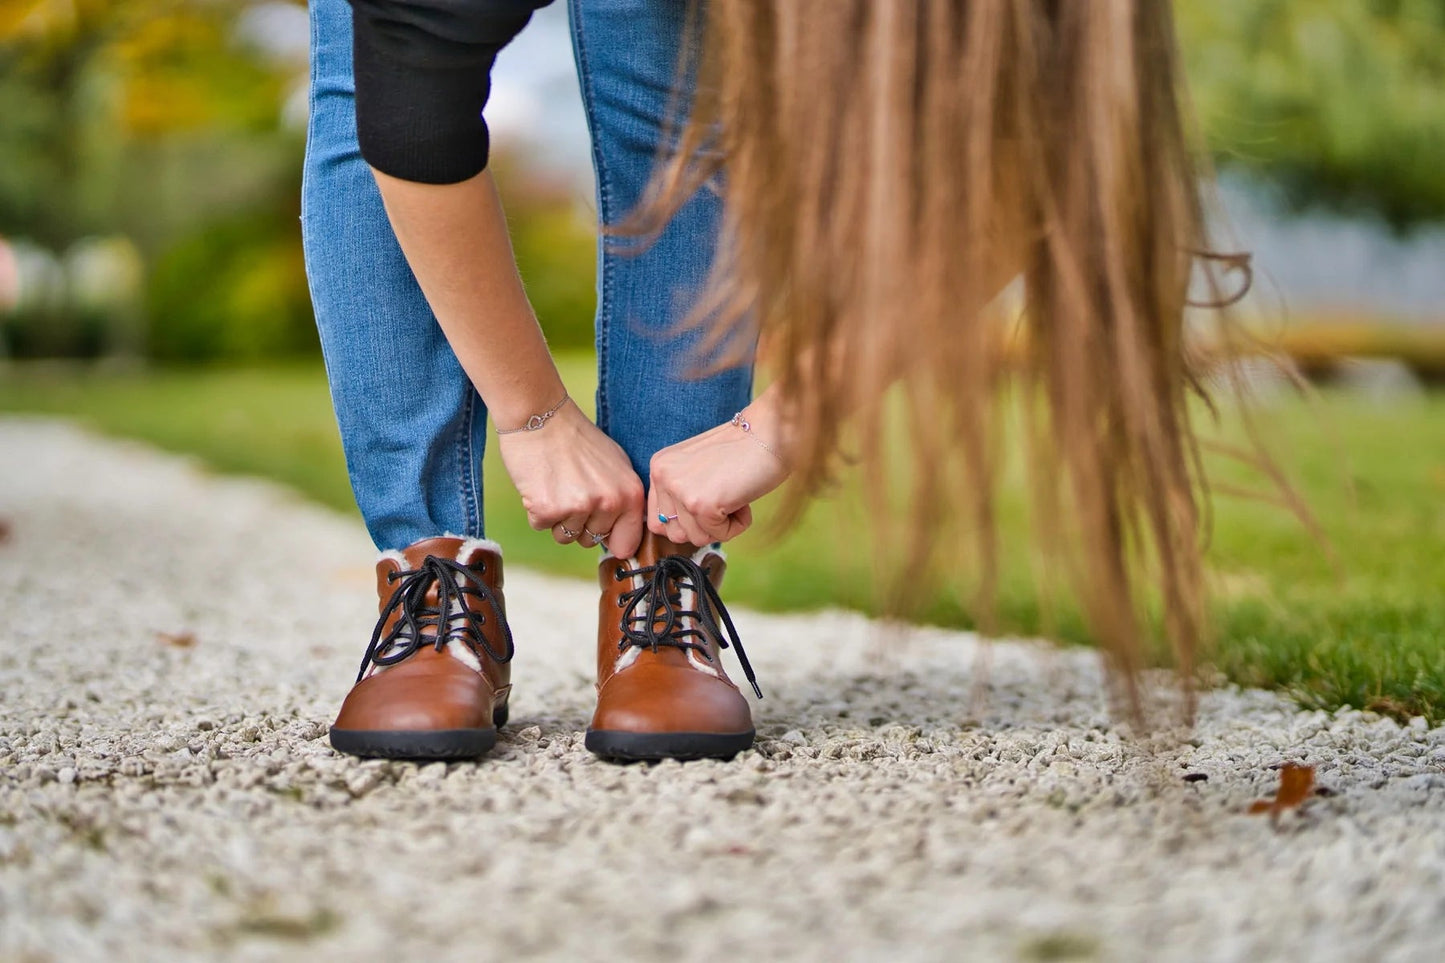 Ahinsa Winter Barefoot barfods vinterstøvler til kvinder i farven brown, lifestyle